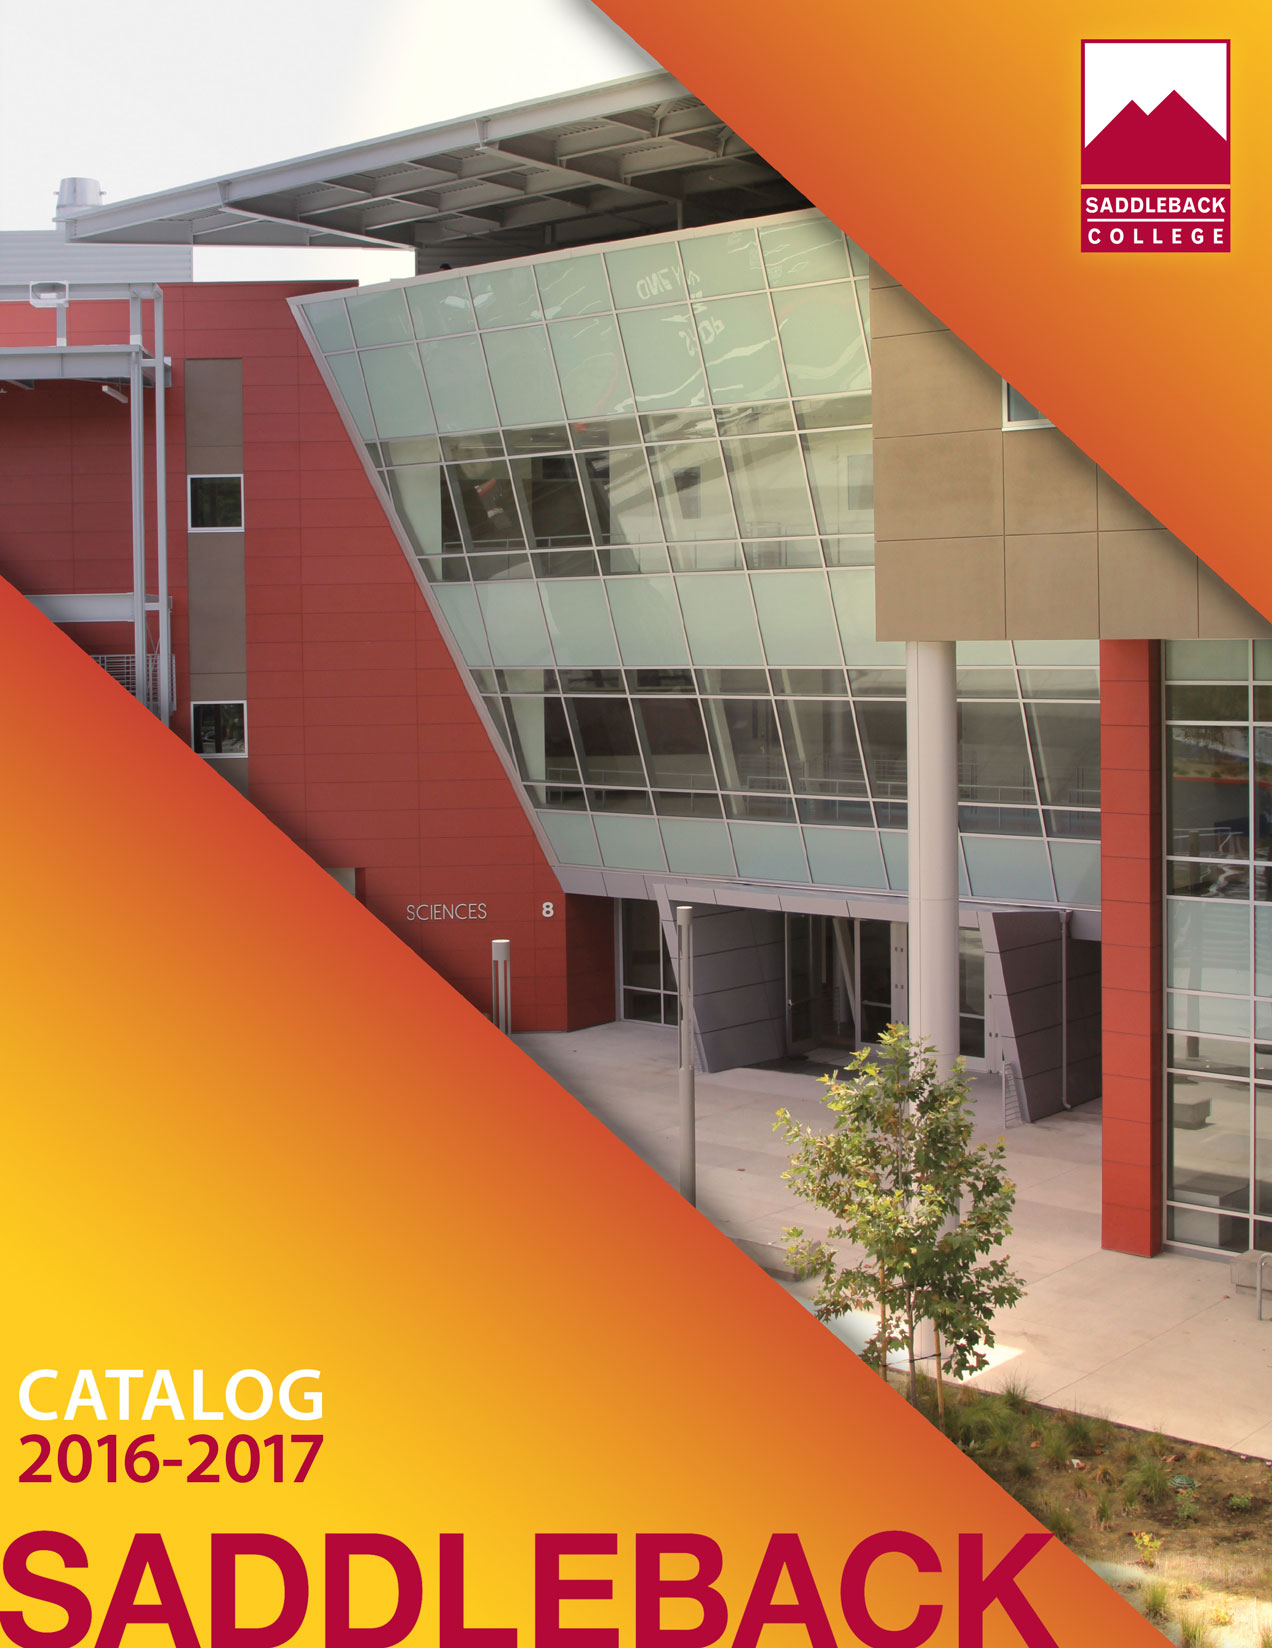 Saddleback College Catalog 2016-2017